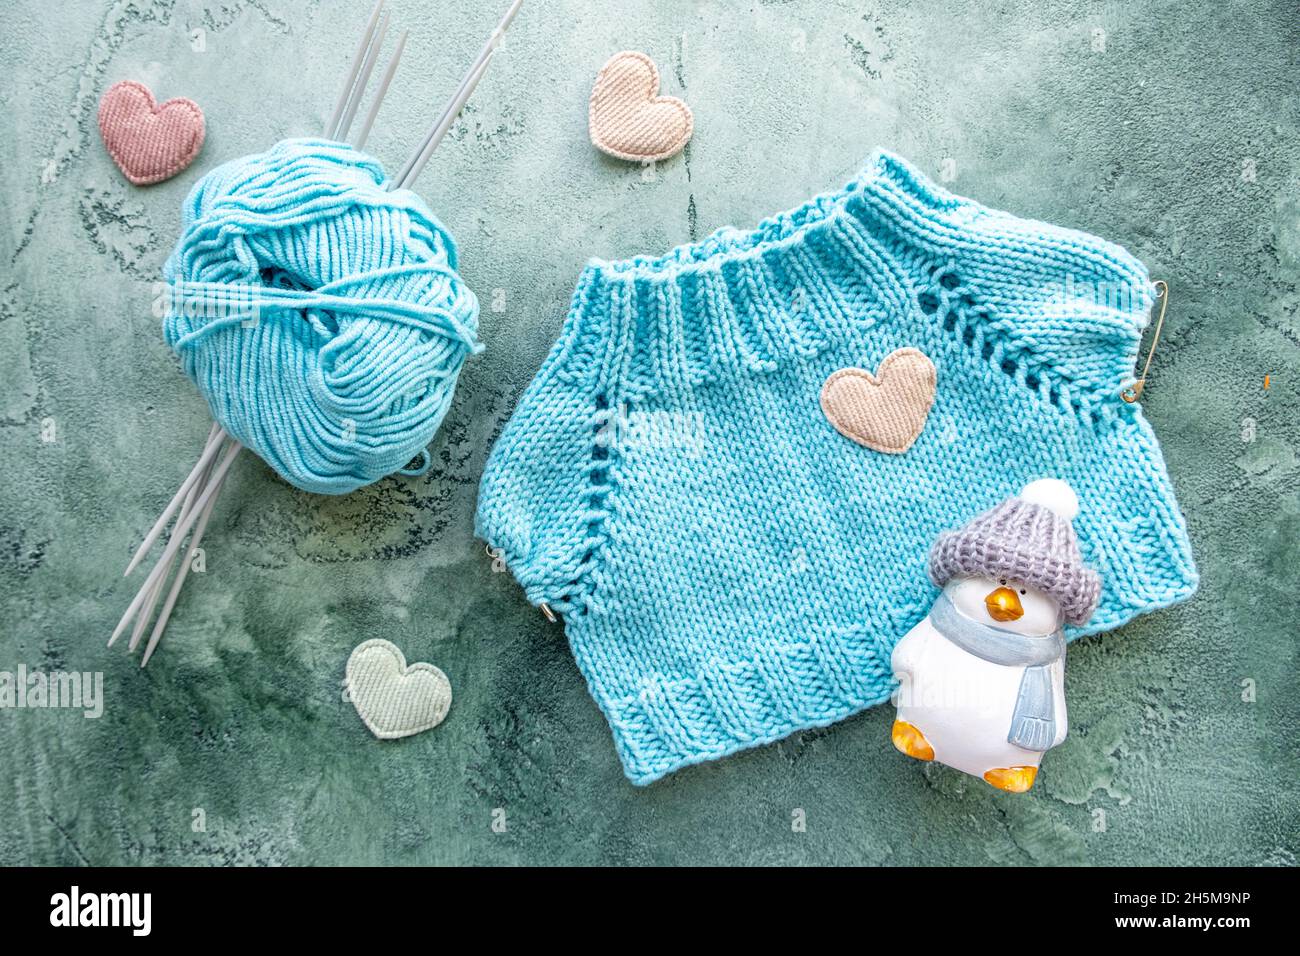 Le concept de tricotage des vêtements pour les jouets et les bébés.T-shirt tricoté en fil de coton turquoise.Une boule de fils, aiguilles de tricotage, jouet et velours Banque D'Images